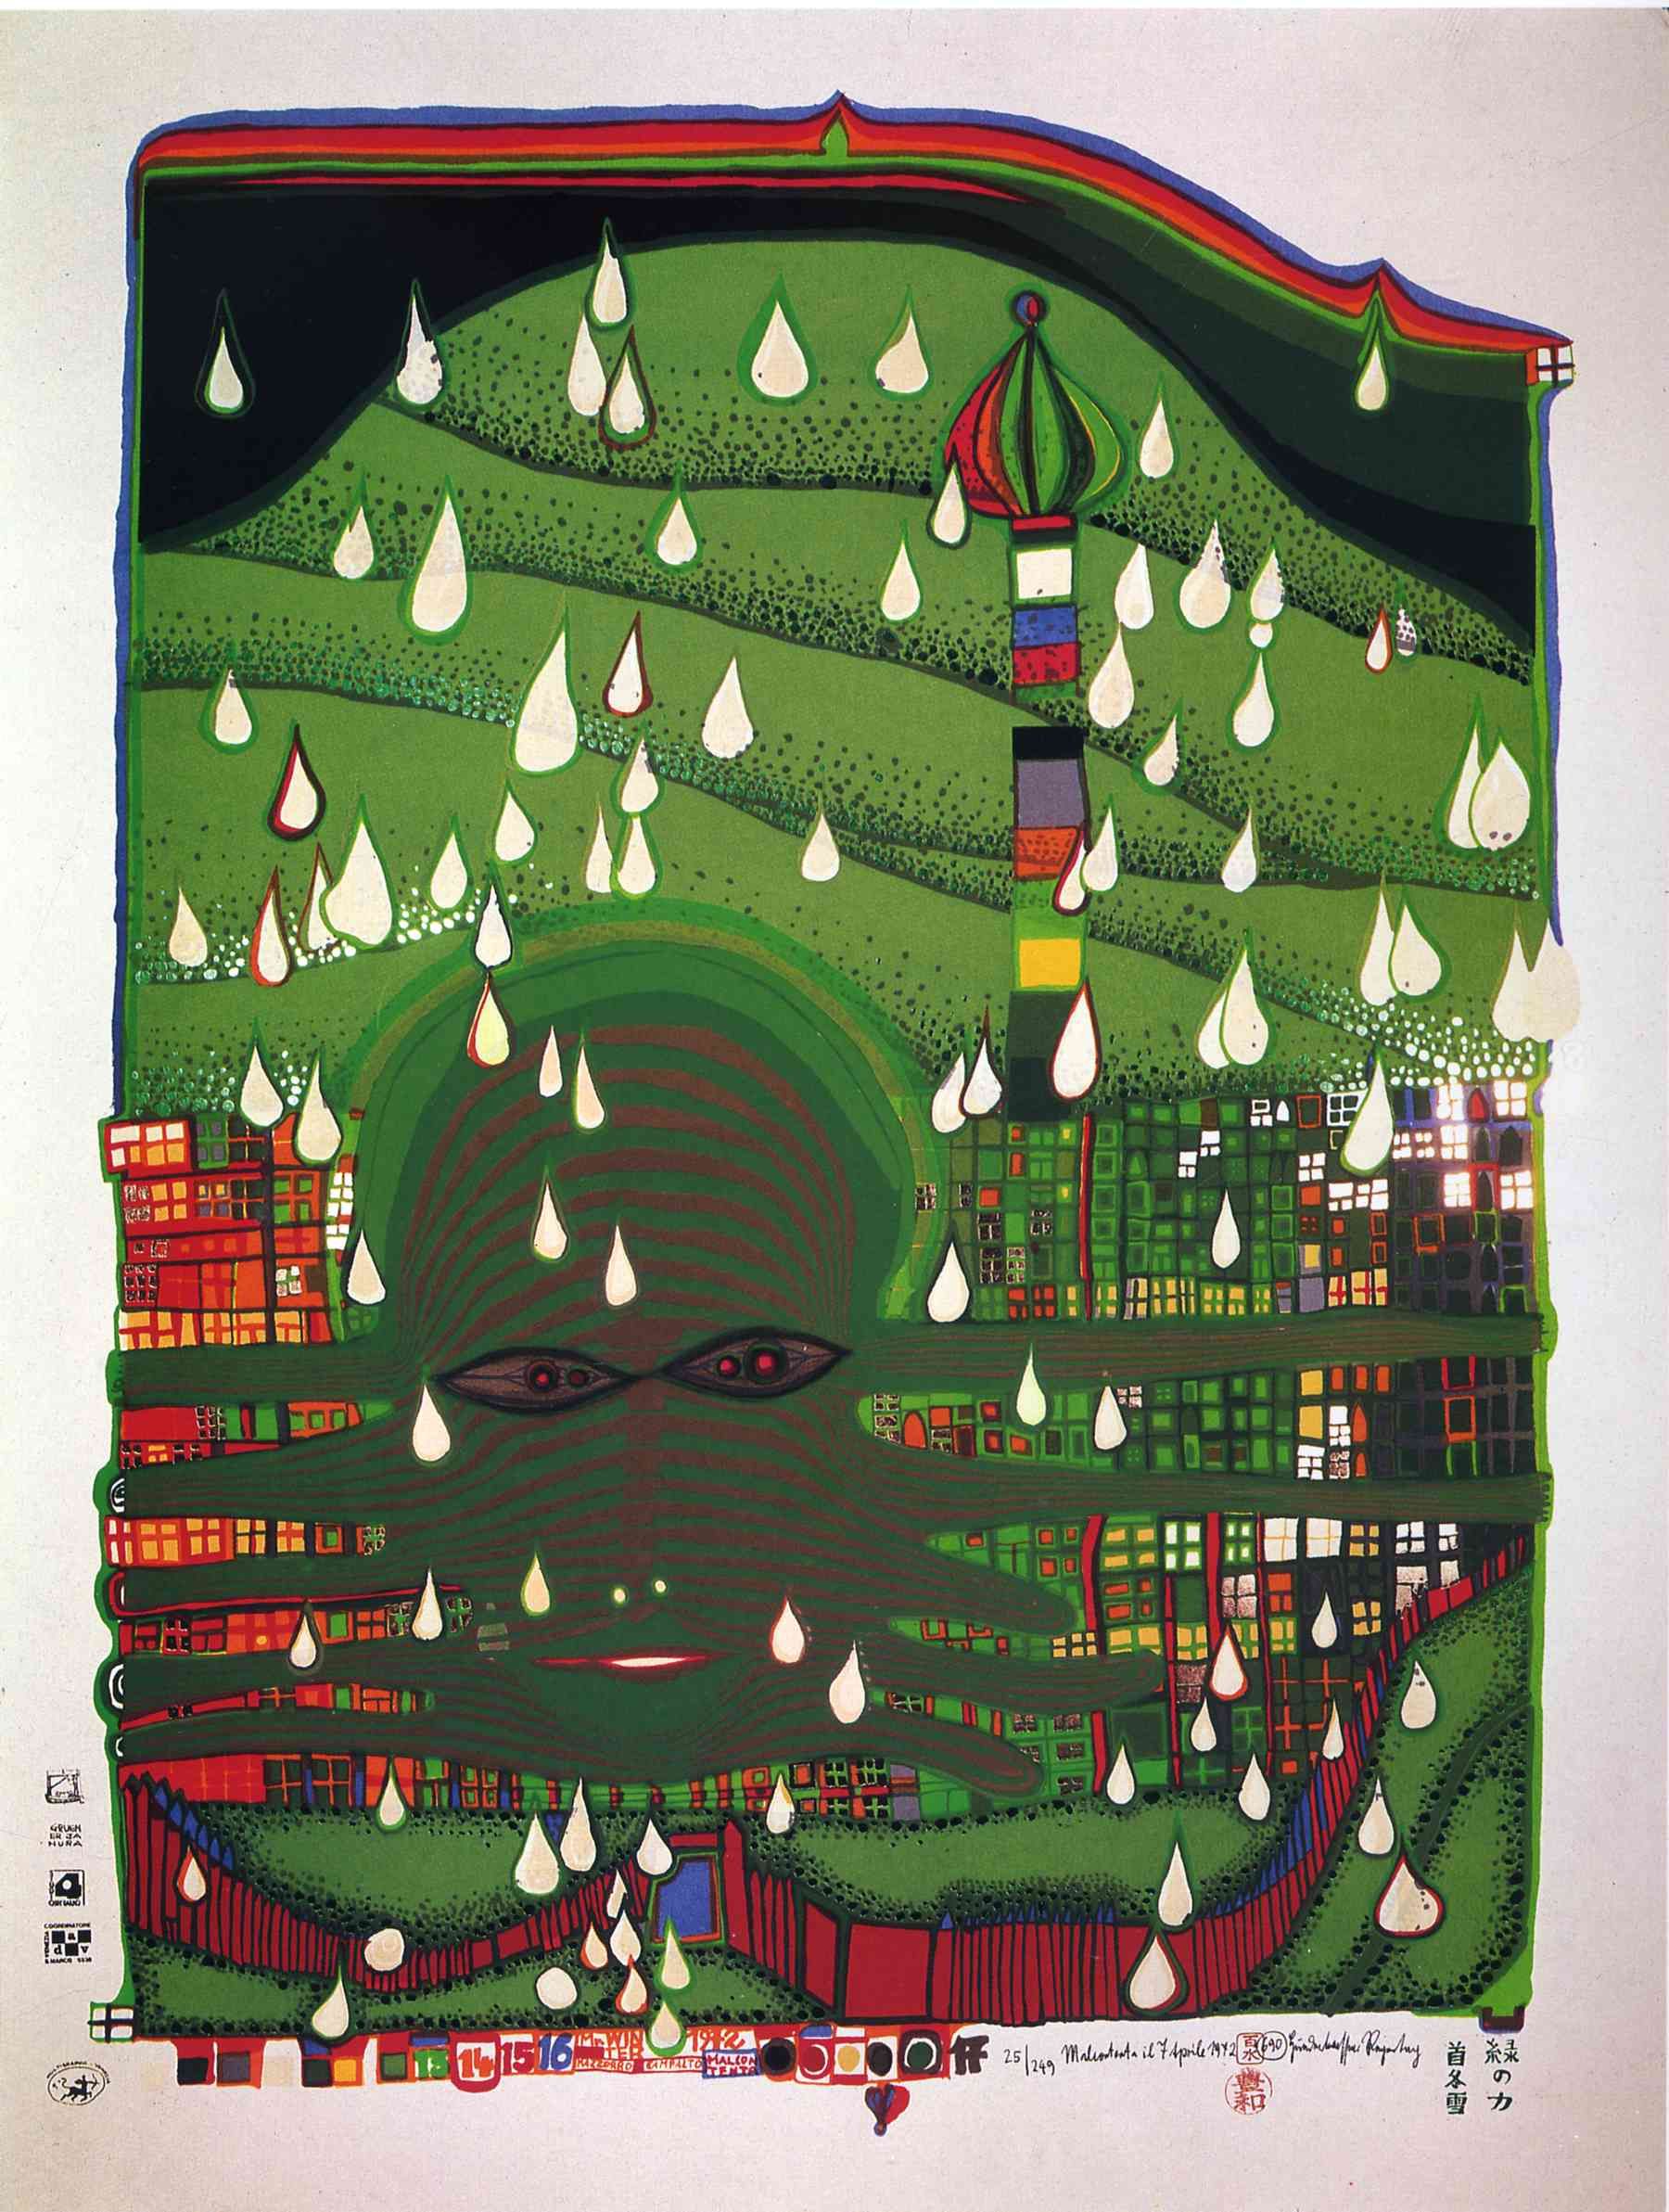 Hundertwasser Paintings, Hundertwasser Painting. Friedensreich hundertwasser, Hundertwasser art, Hundertwasser